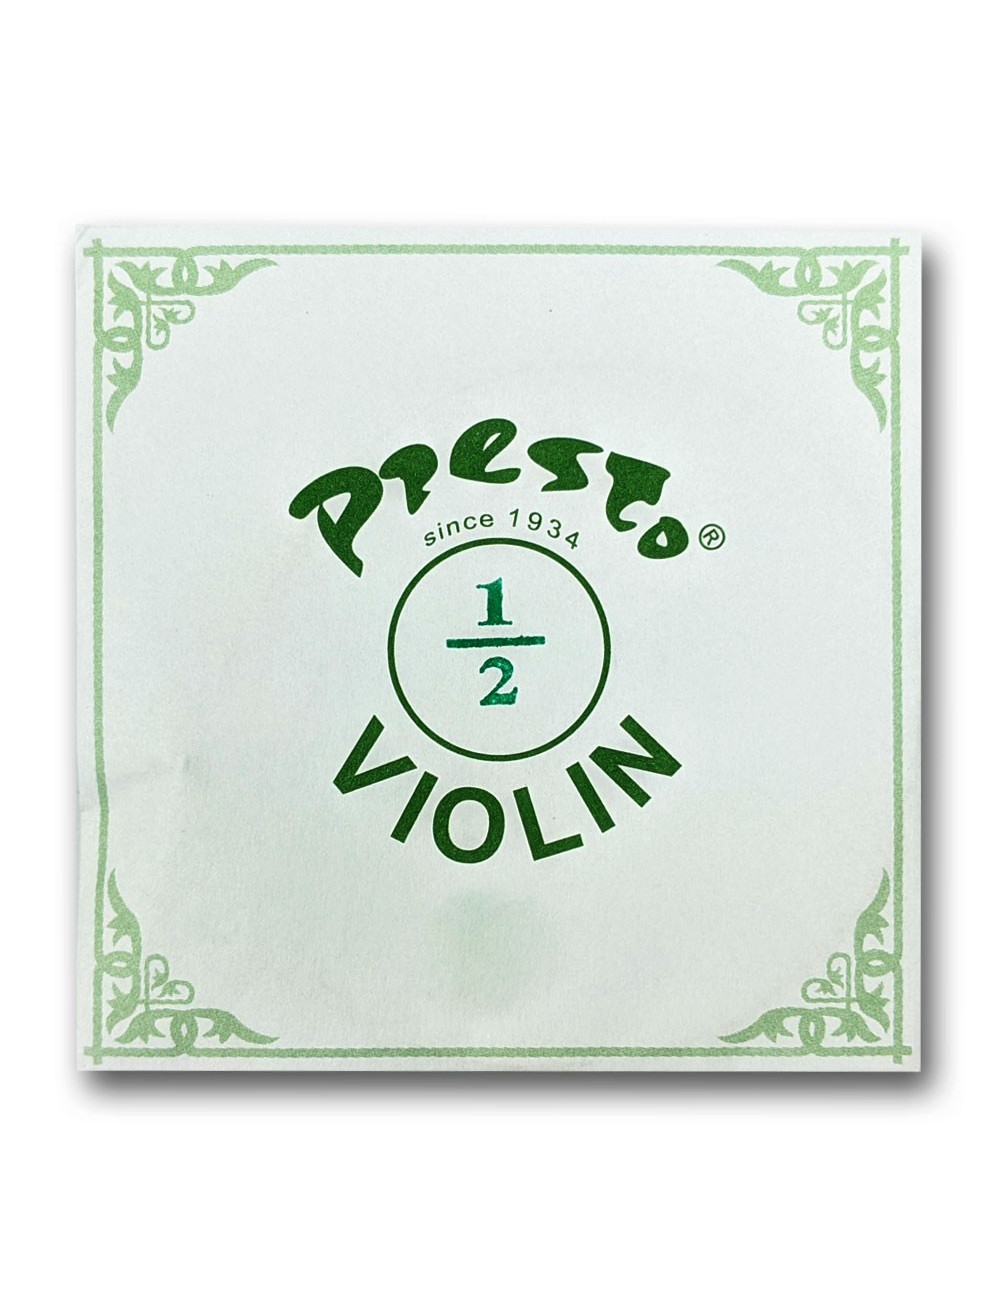 Presto VIOLIN 1/2 struny skrzypcowe